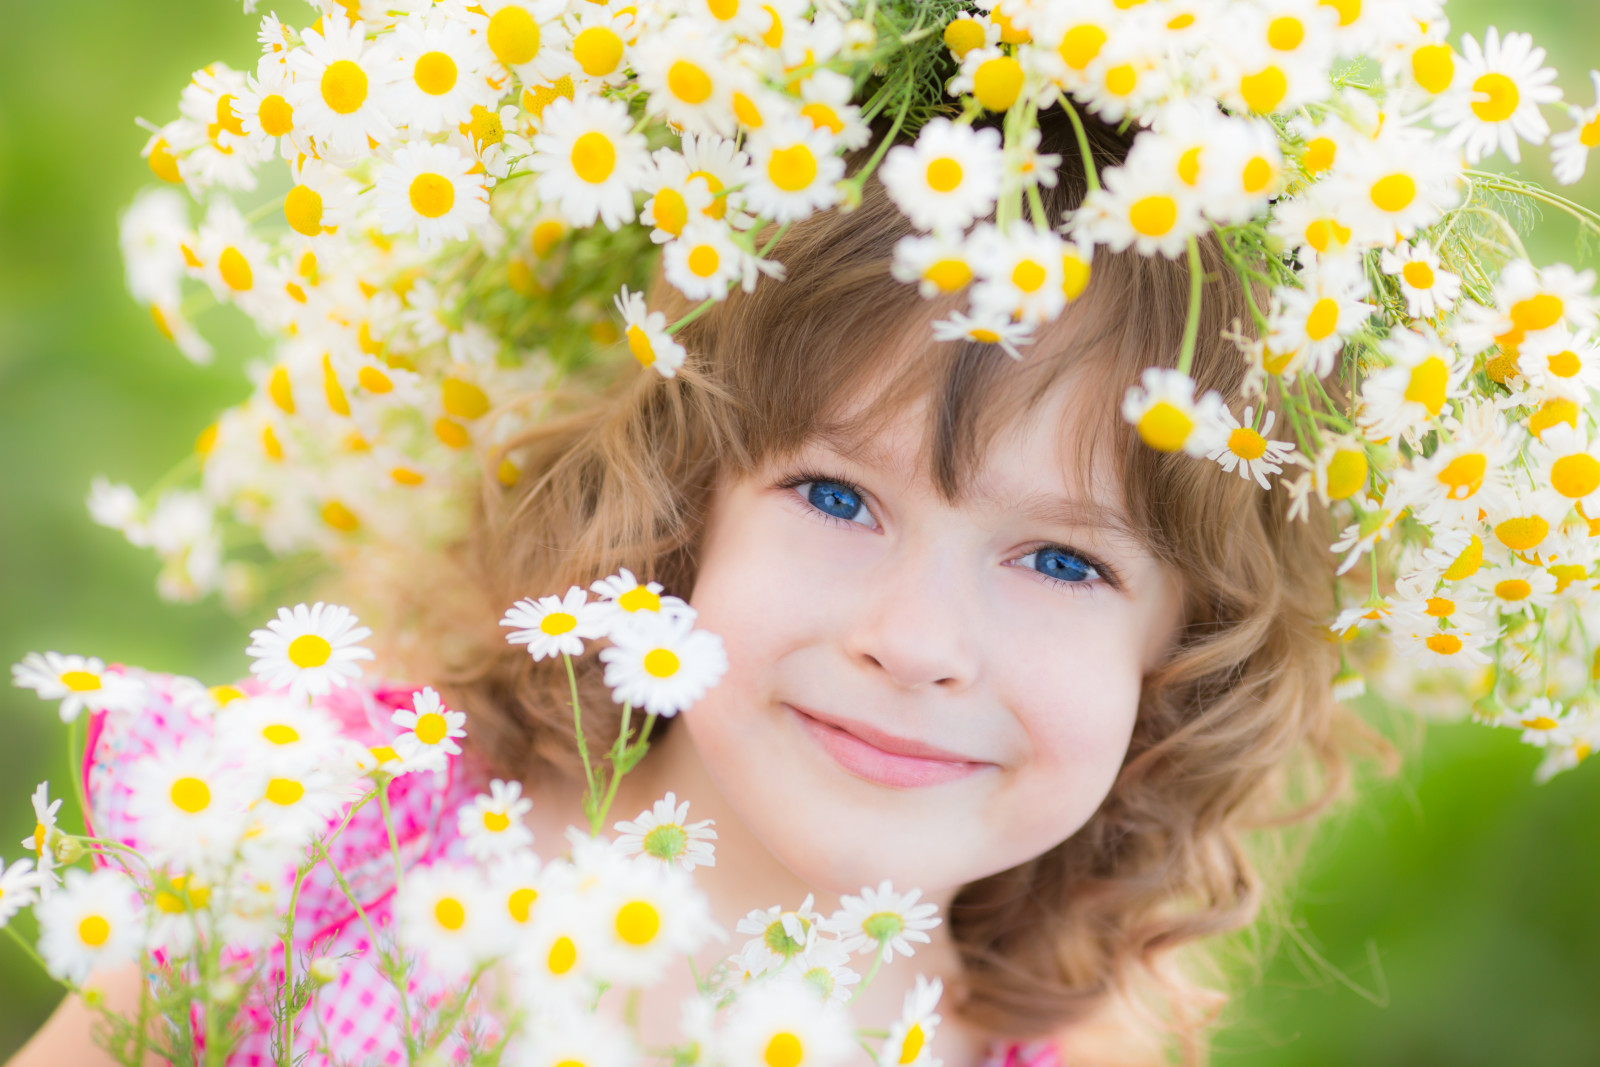 女孩, 微笑, 花卉, 儿童, 花圈, 蓝眼睛的